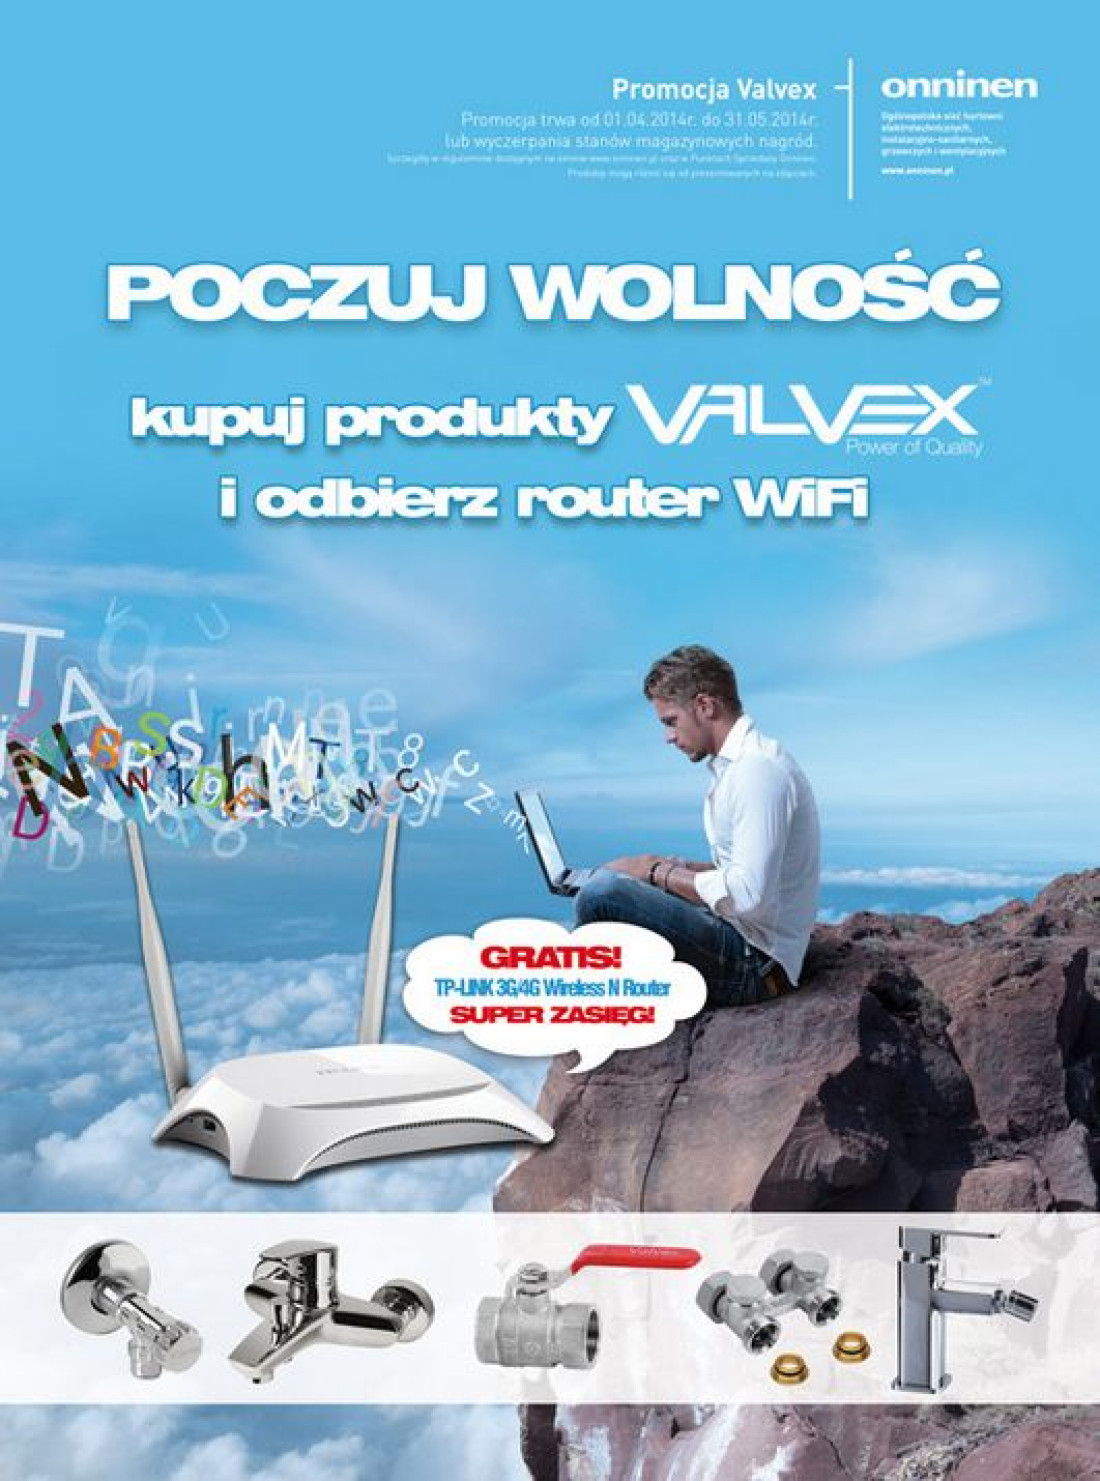 Promocja Valvex "Poczuj wolność" i odbierz router - do 31 maja 2014 r.